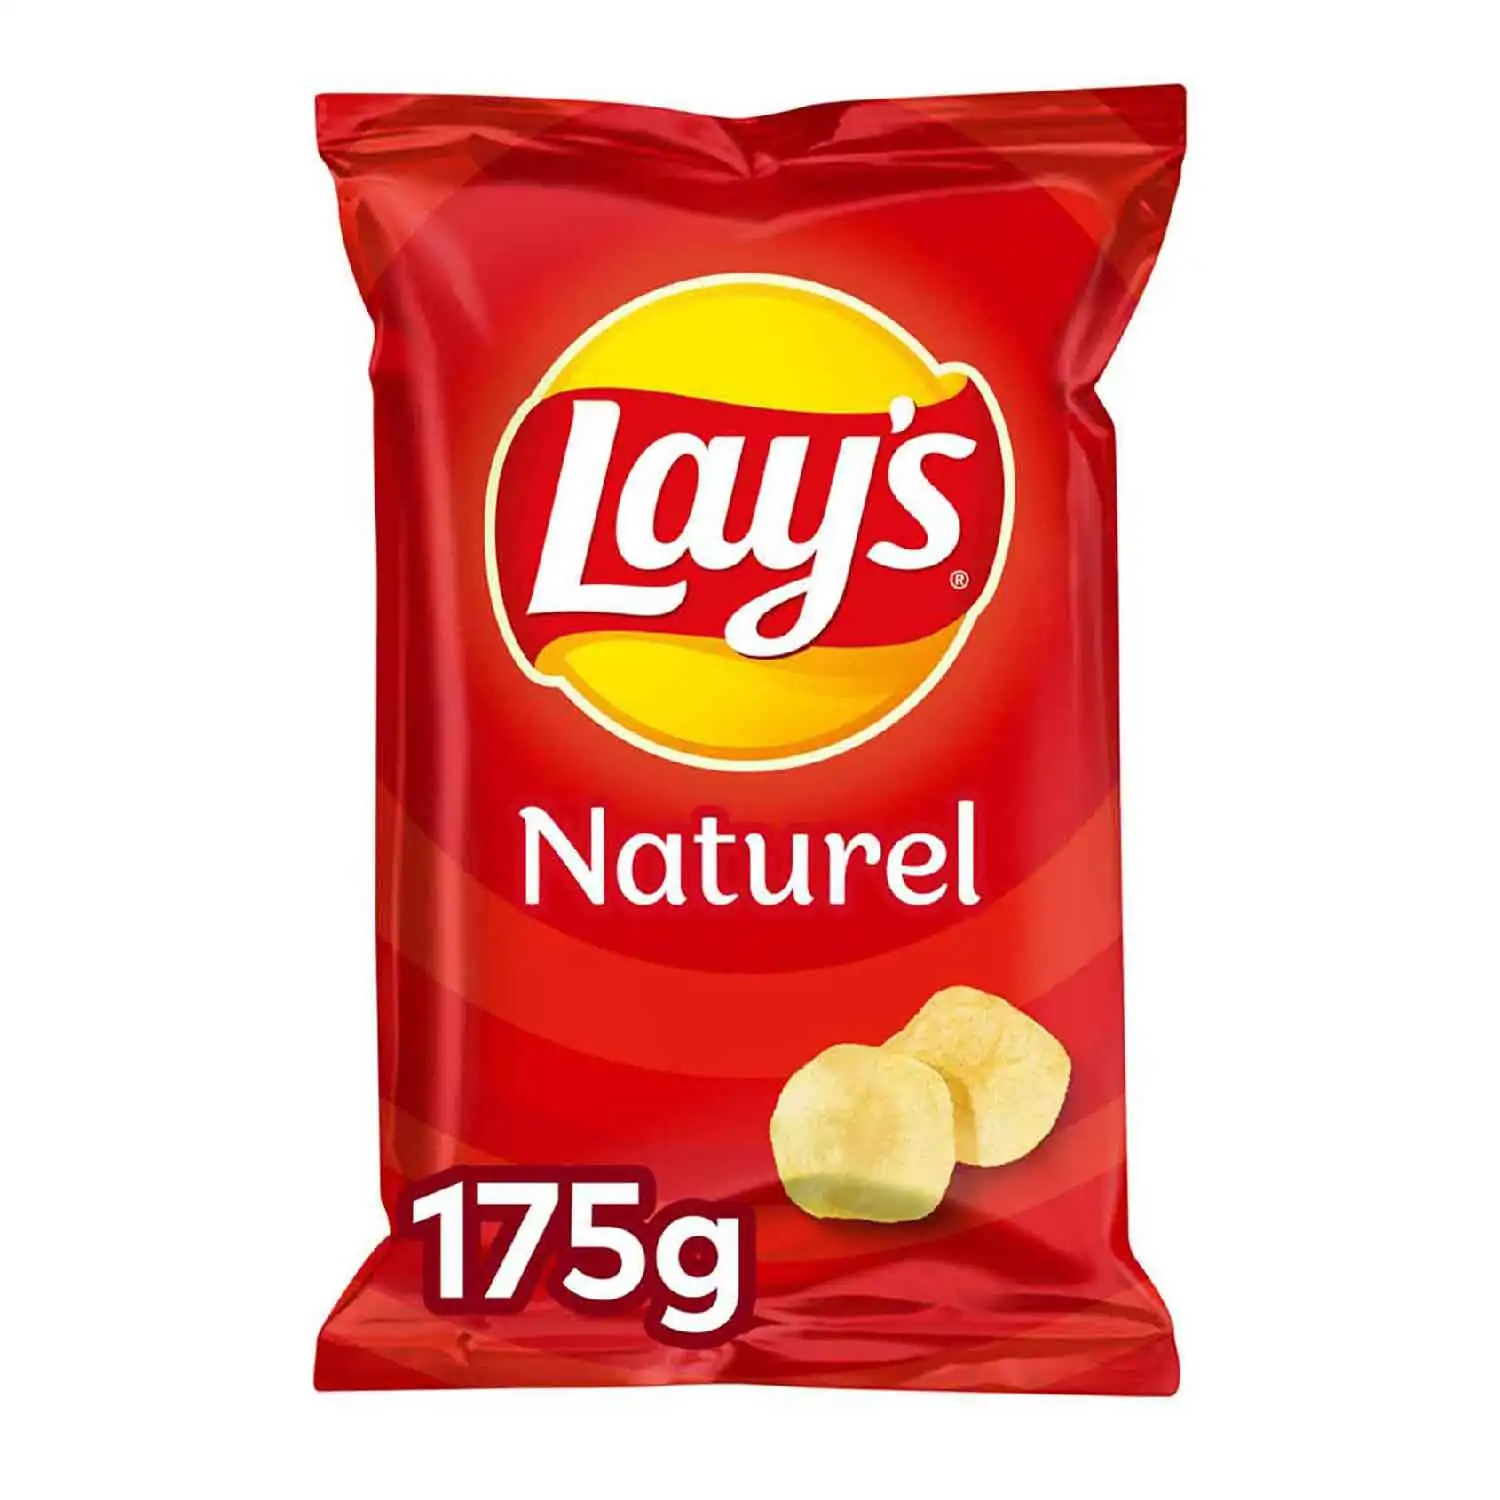 Lay's naturel 175g - Buy at Real Tobacco